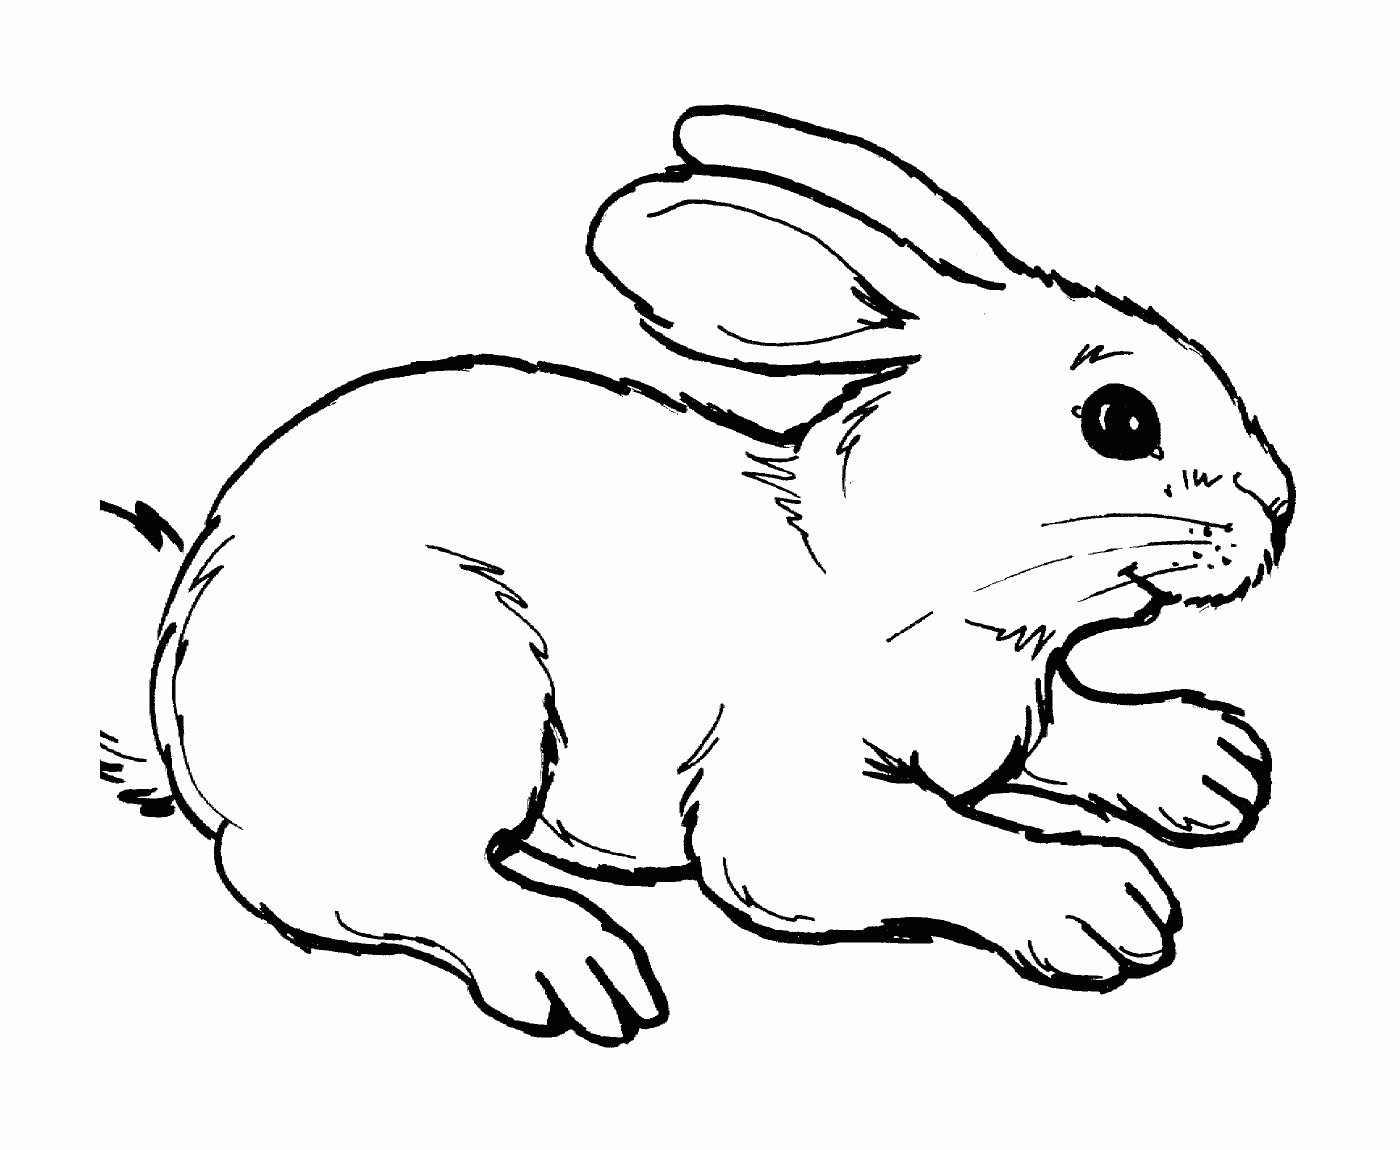  Ein realistisches und niedliches Kaninchen 